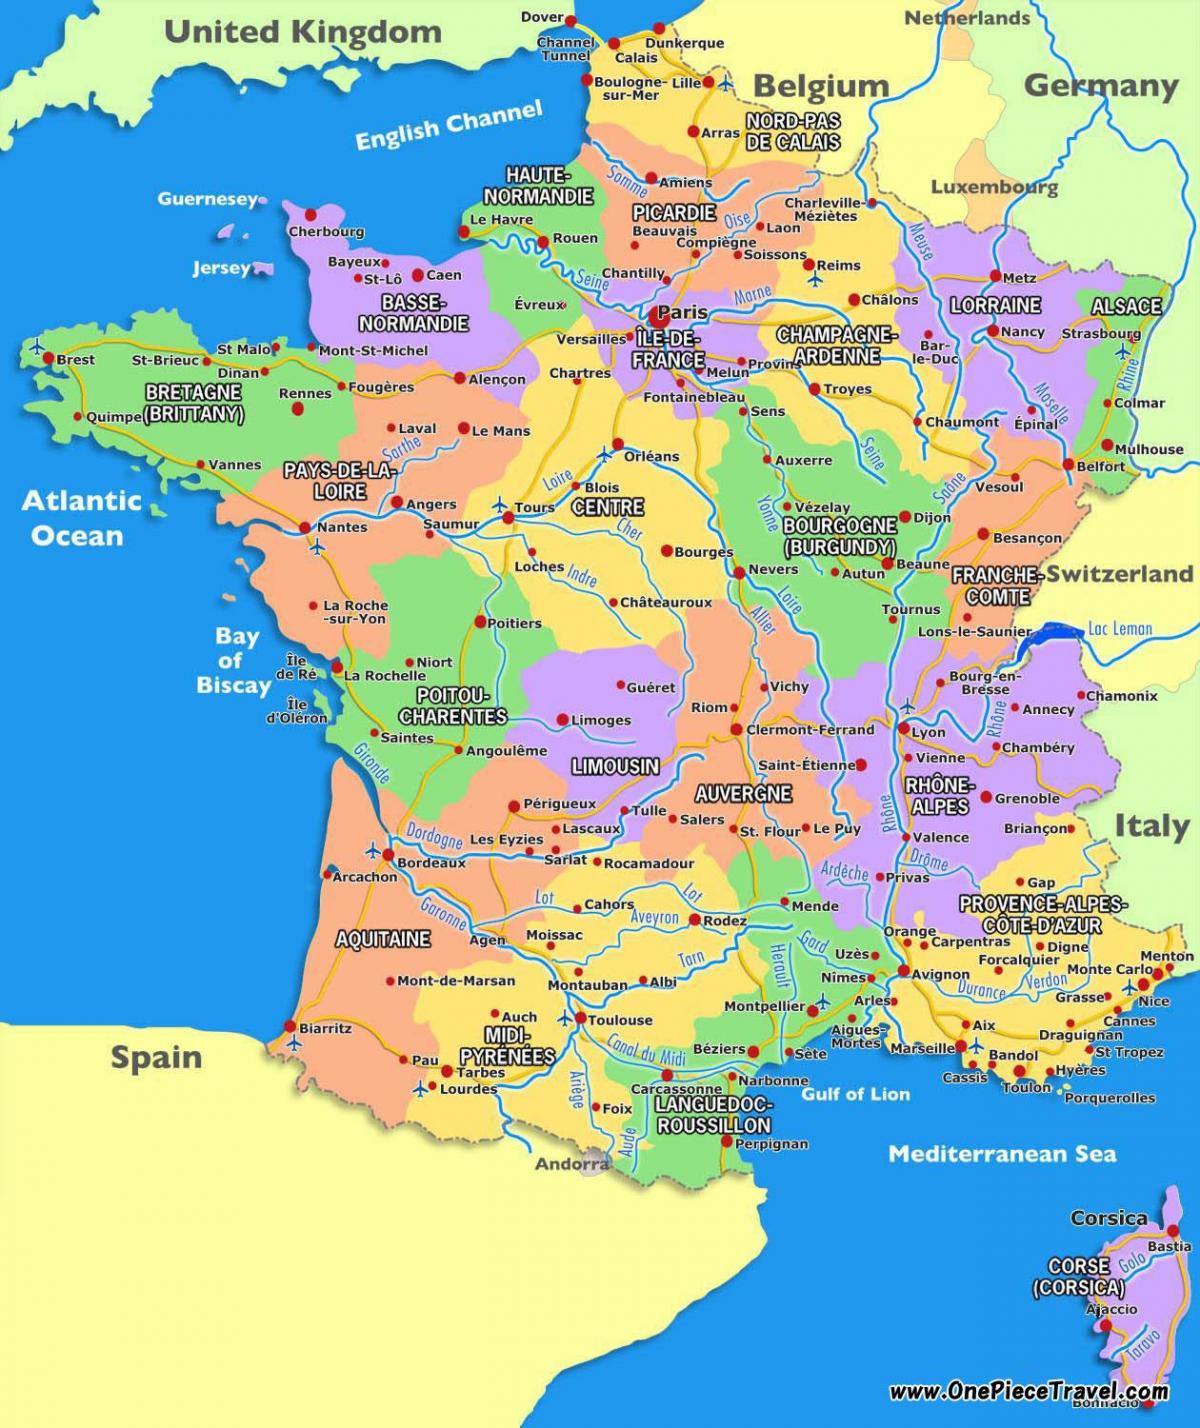 turistická mapa Francie turistických atrakcí